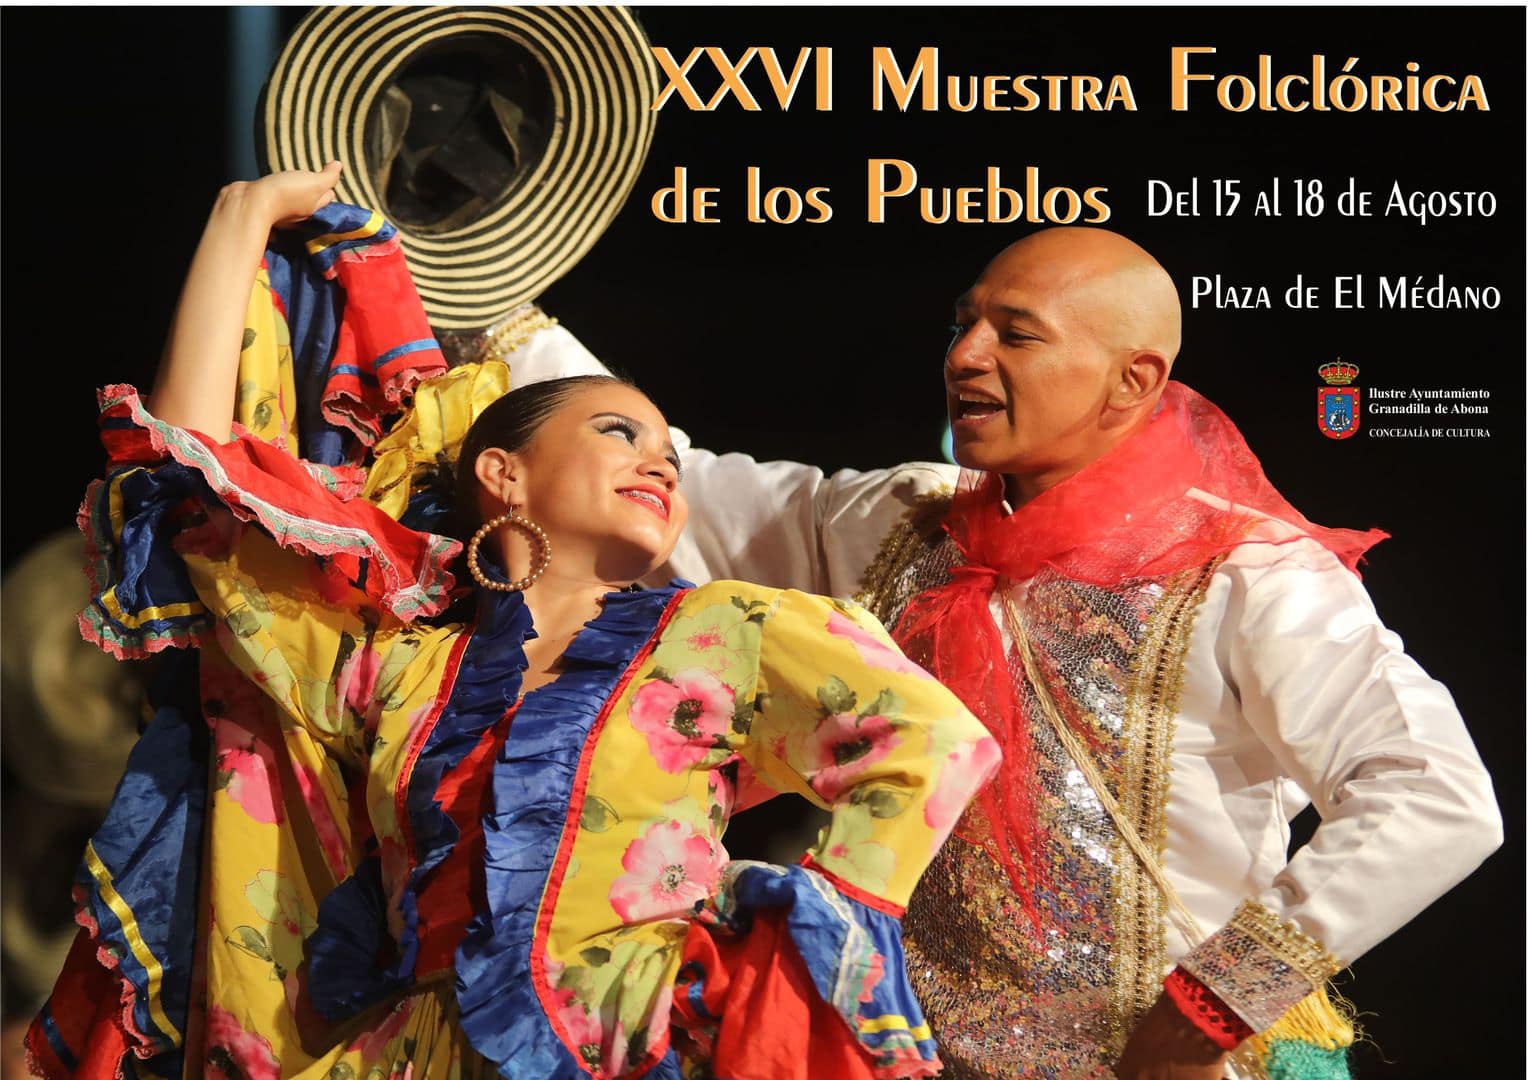 La ‘Muestra Folklórica de los Pueblos’, desde este jueves hasta el próximo domingo en El Médano dentro de la programación de ‘Sansofé 2019’